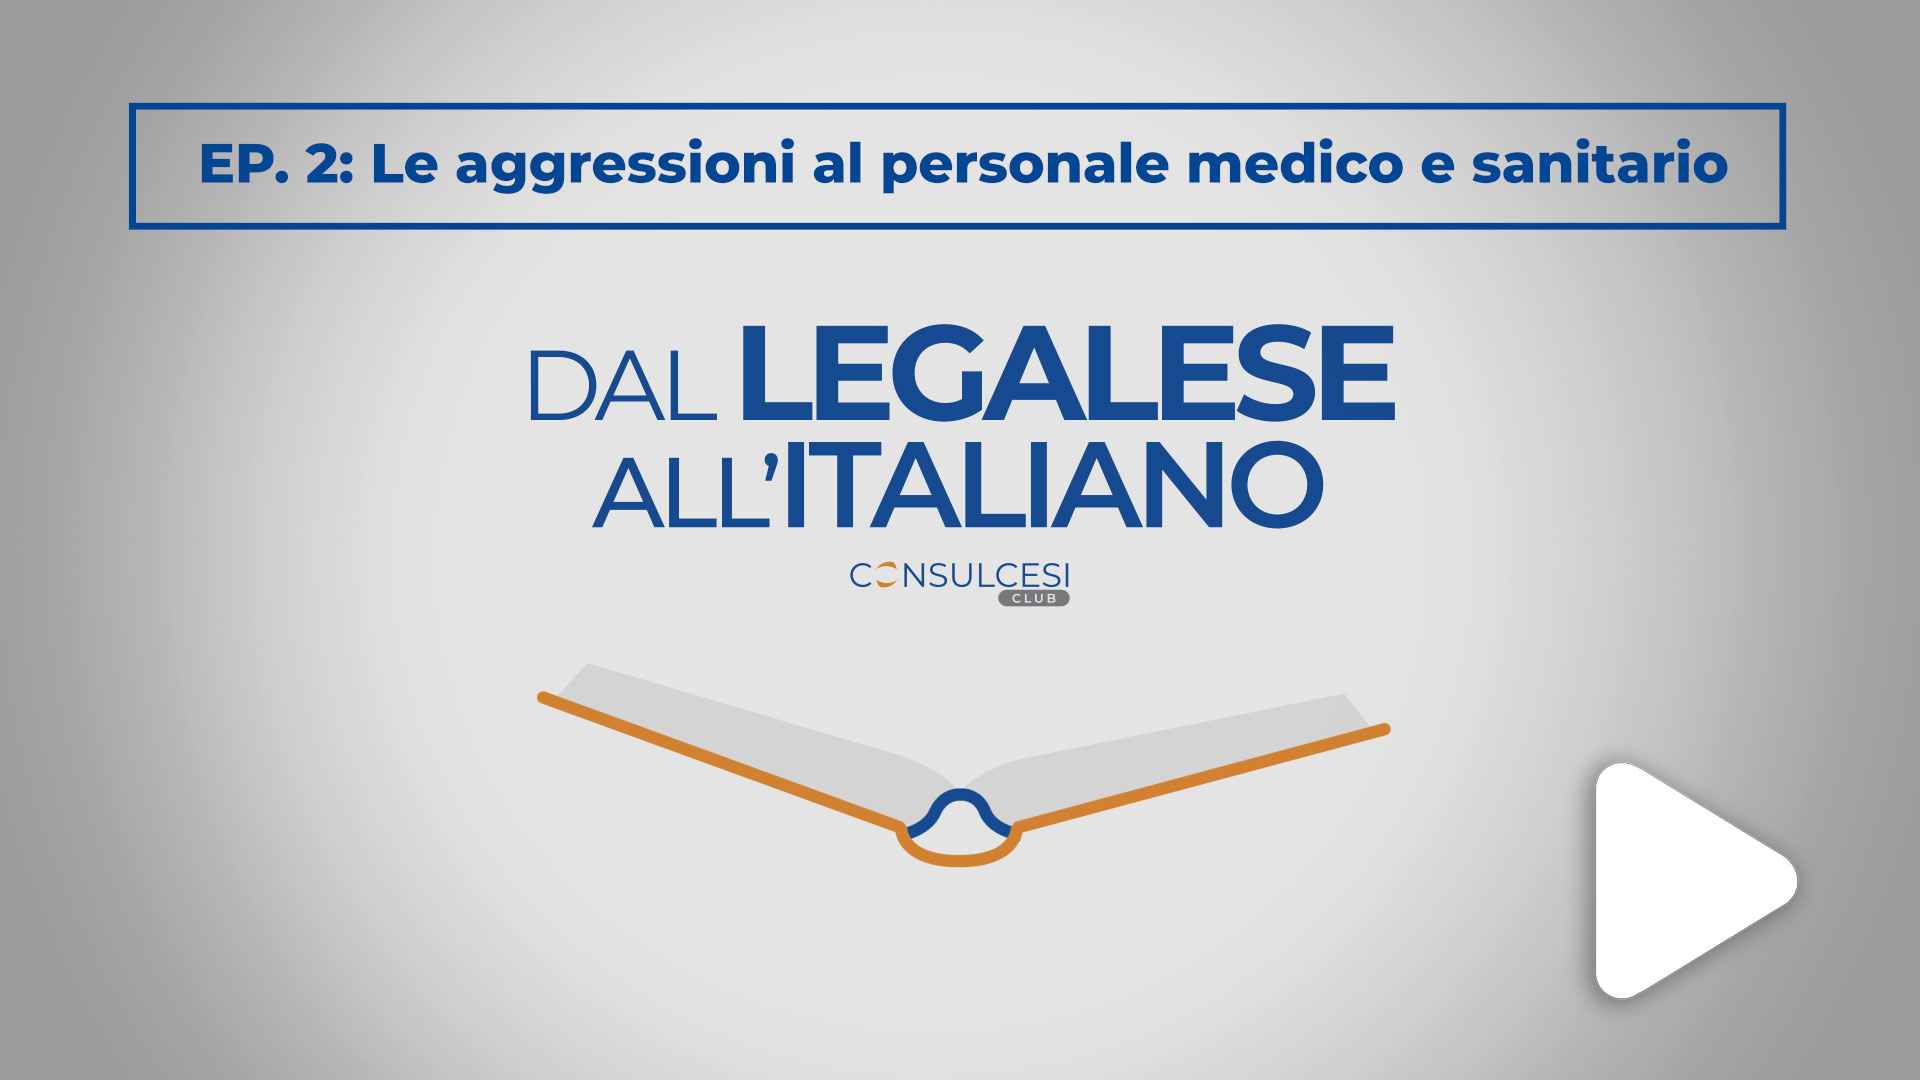 Dal legalese all'italiano: Ep. 2 Le aggressioni al personale sanitario